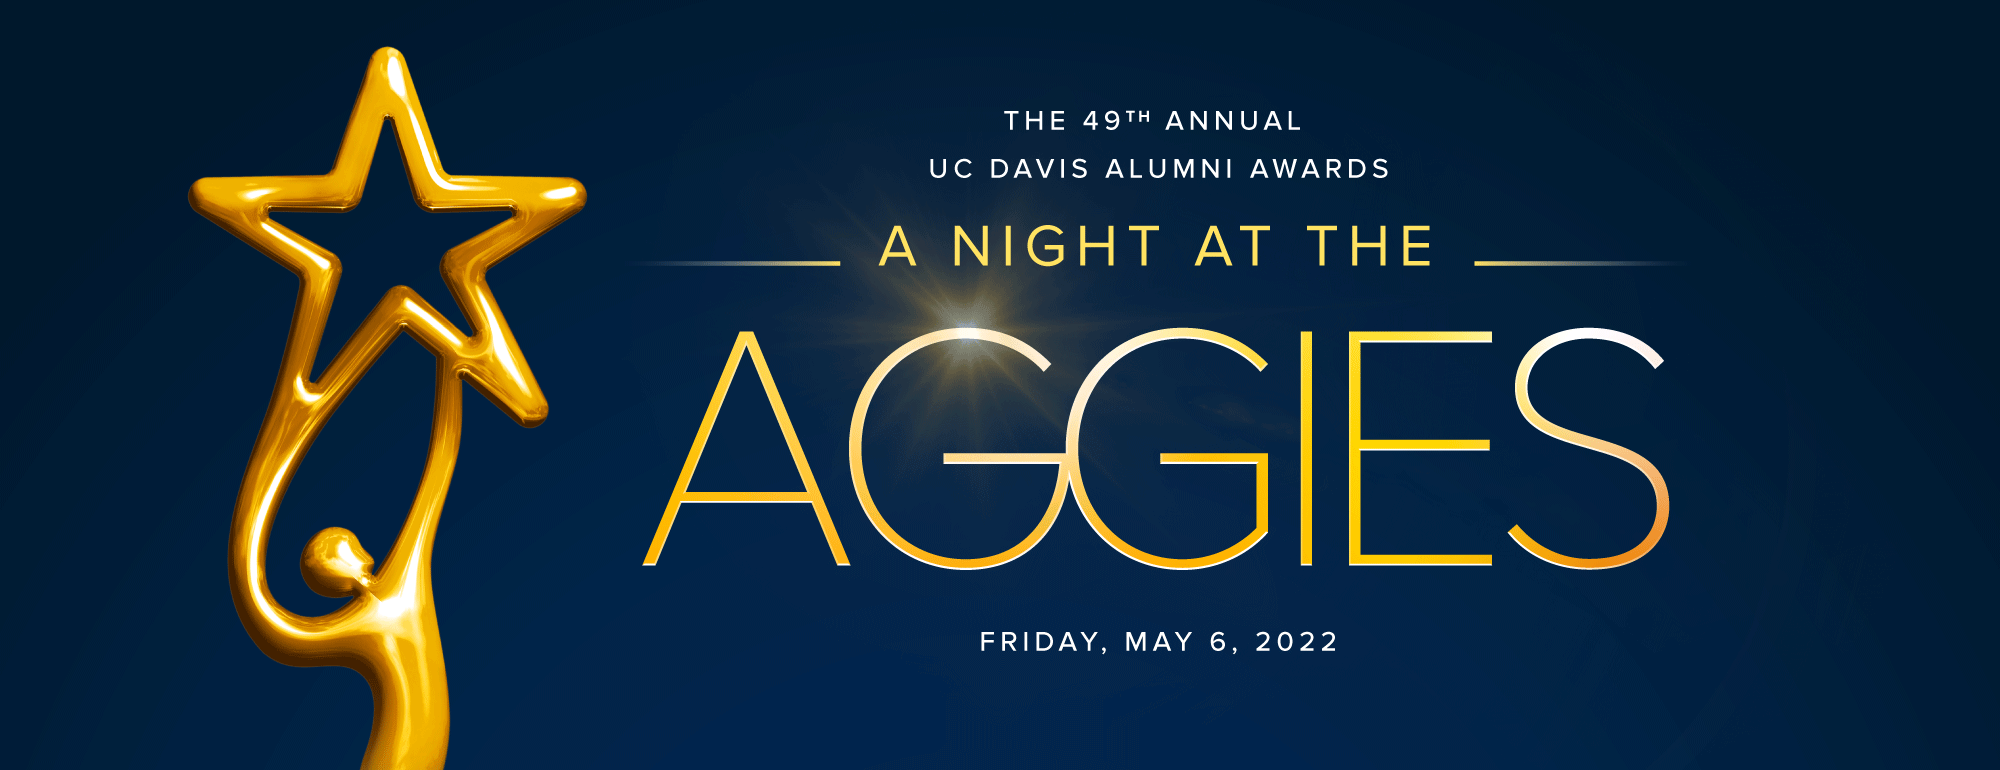 a night at the aggies: uc davis alumni awards may 6 2022